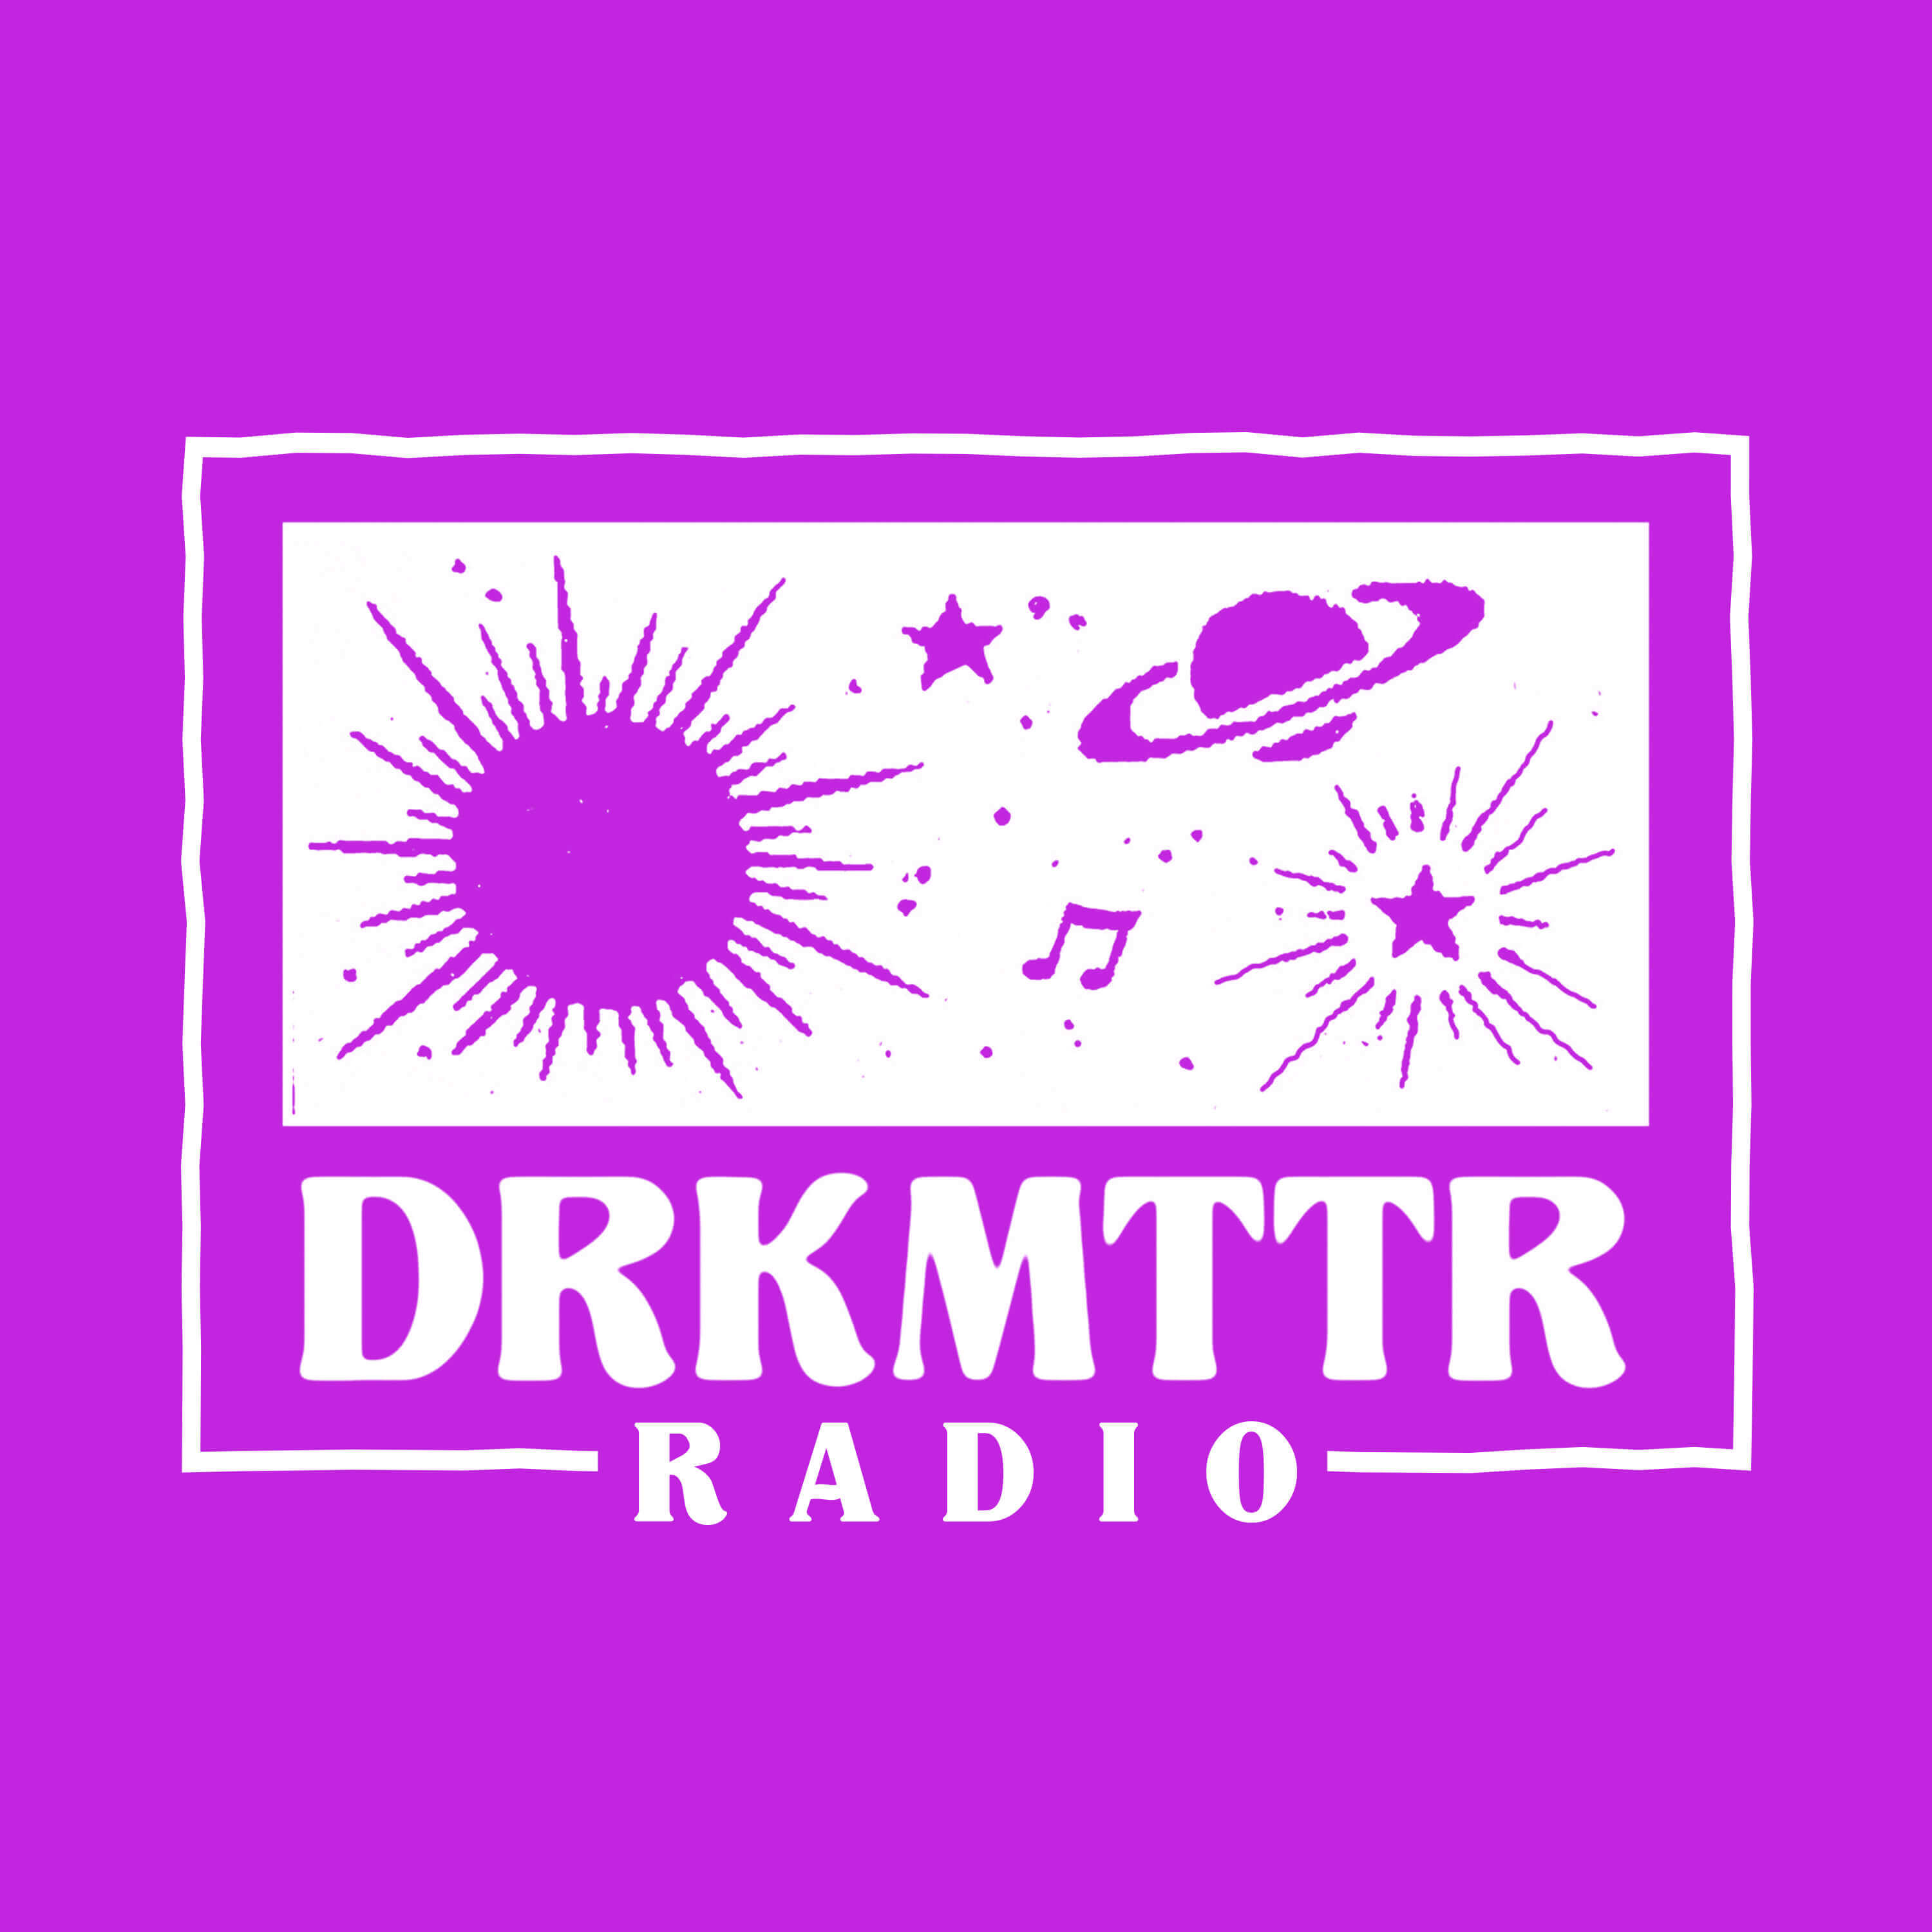 DRKMTTR Radio